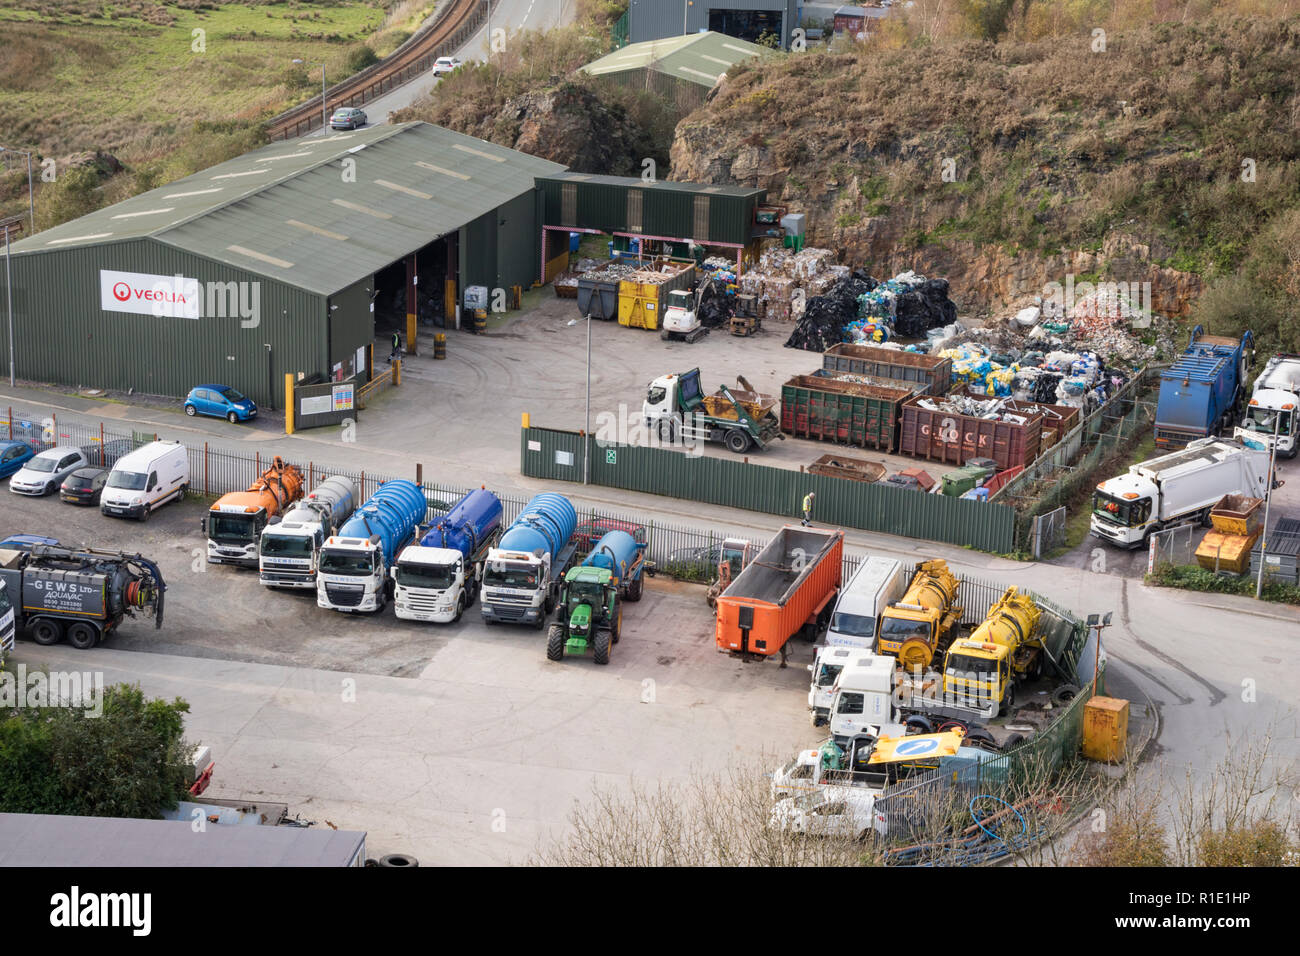 Veolia almacén gestión de residuos cerca de Porthmadog, North Wales, REINO UNIDO Foto de stock